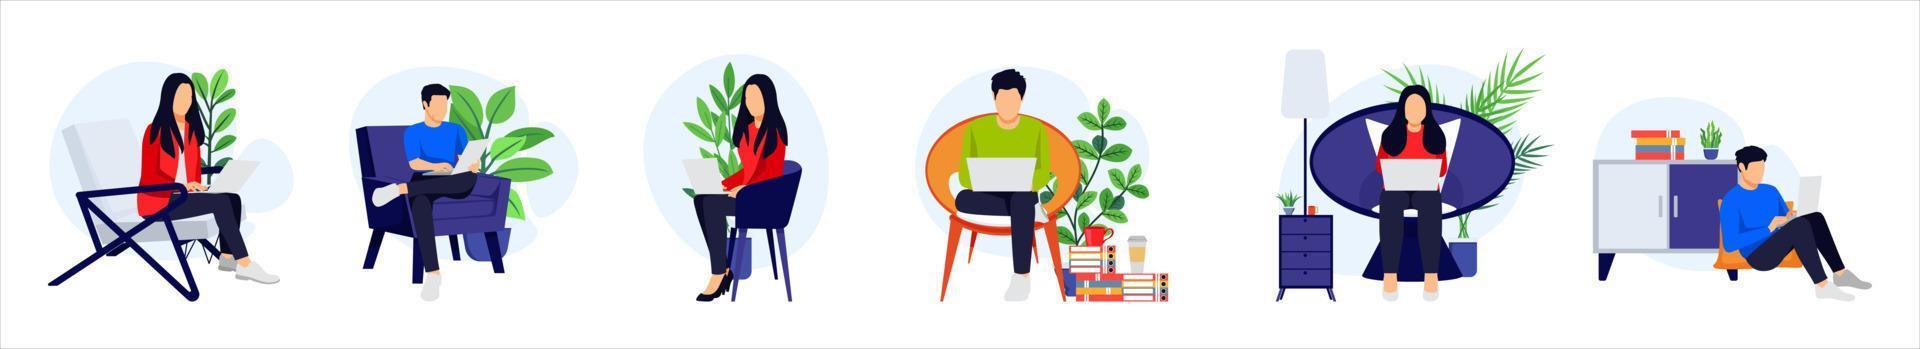 jeu de caractères indépendant homme et femme assis sur un fauteuil de canapé travaillant sur un ordinateur portable avec une plante d'intérieur isolée vecteur